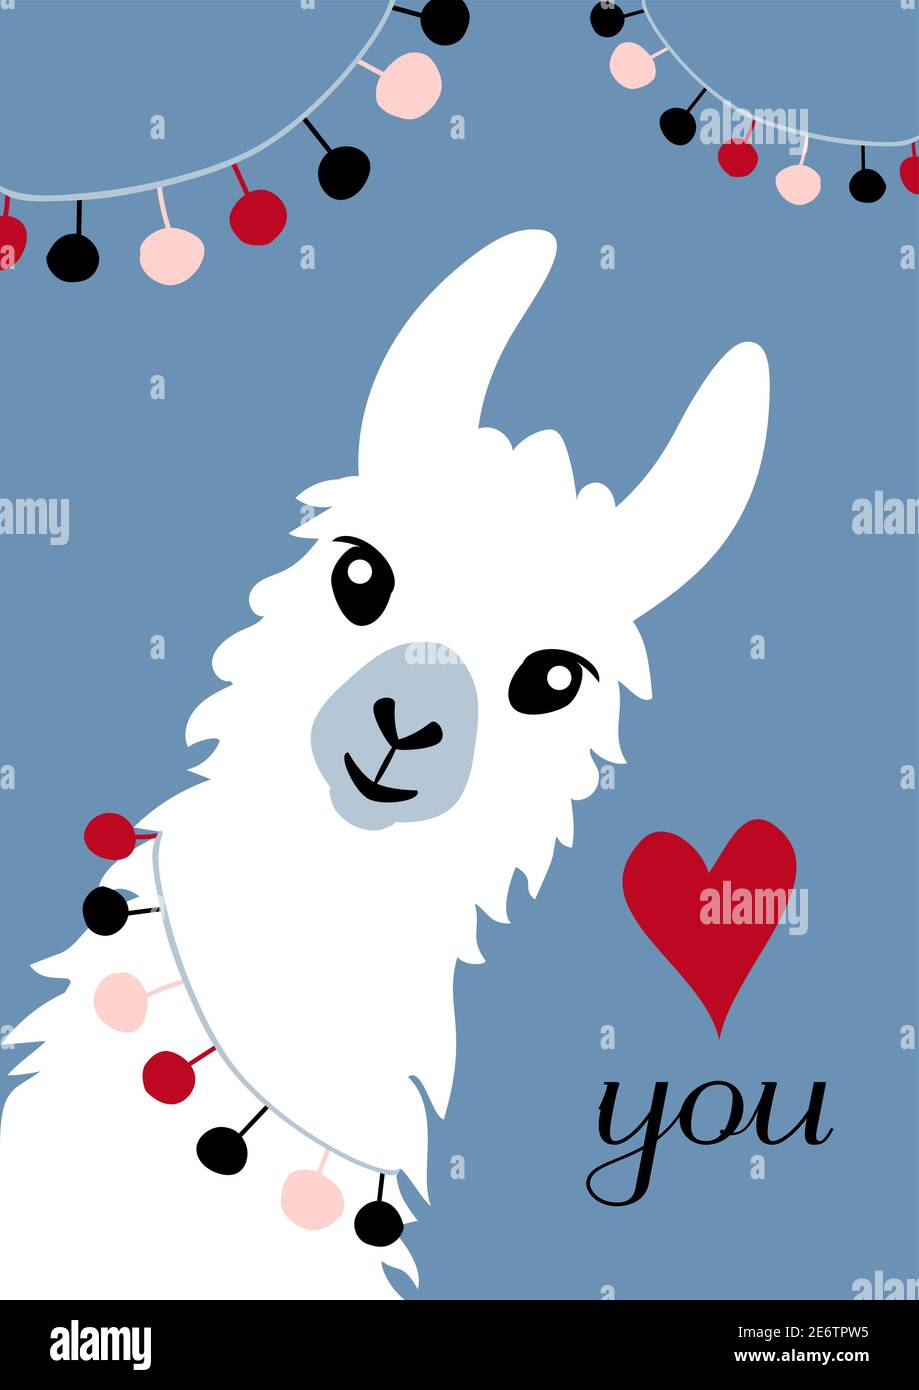 Llama Alpaca, illustration de la carte de Saint-Valentin. Résumé, Albino, animal, cheveux d'animaux, faune animale Illustration de Vecteur